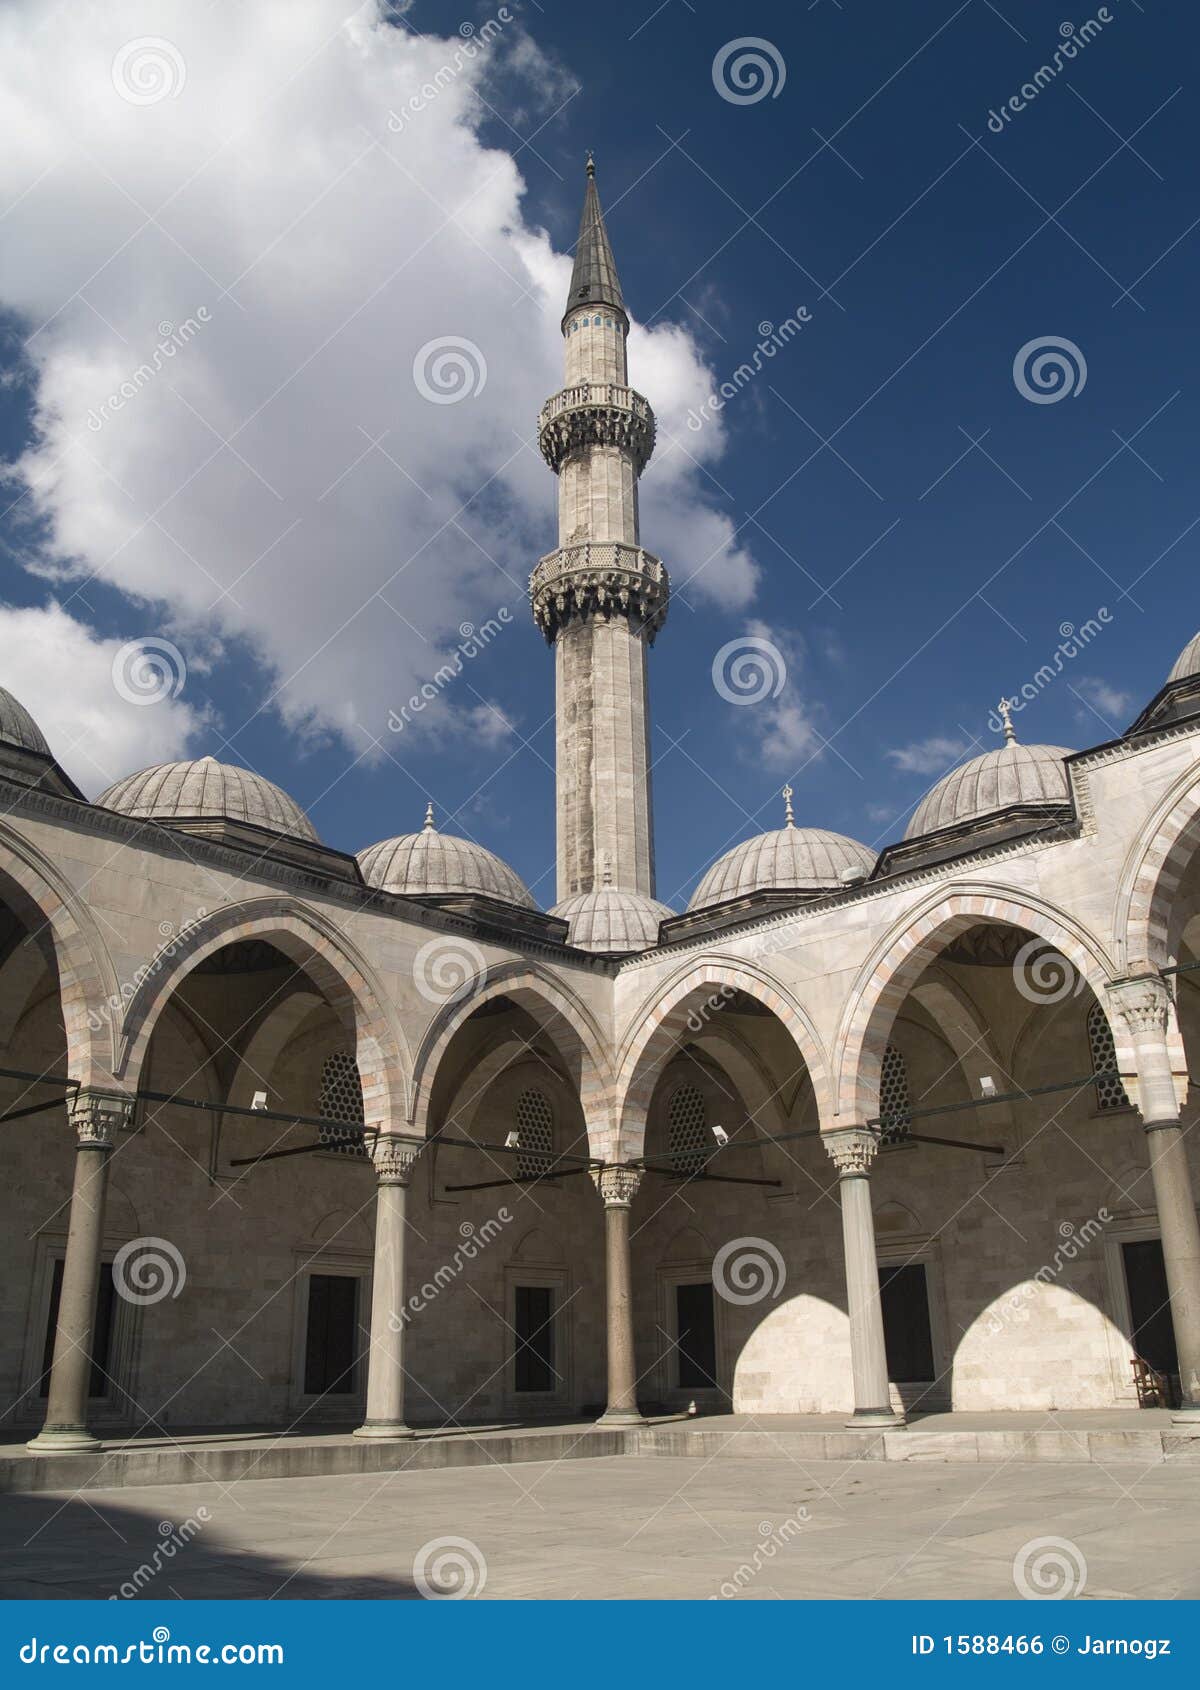 suleymaniye mosque in istambul